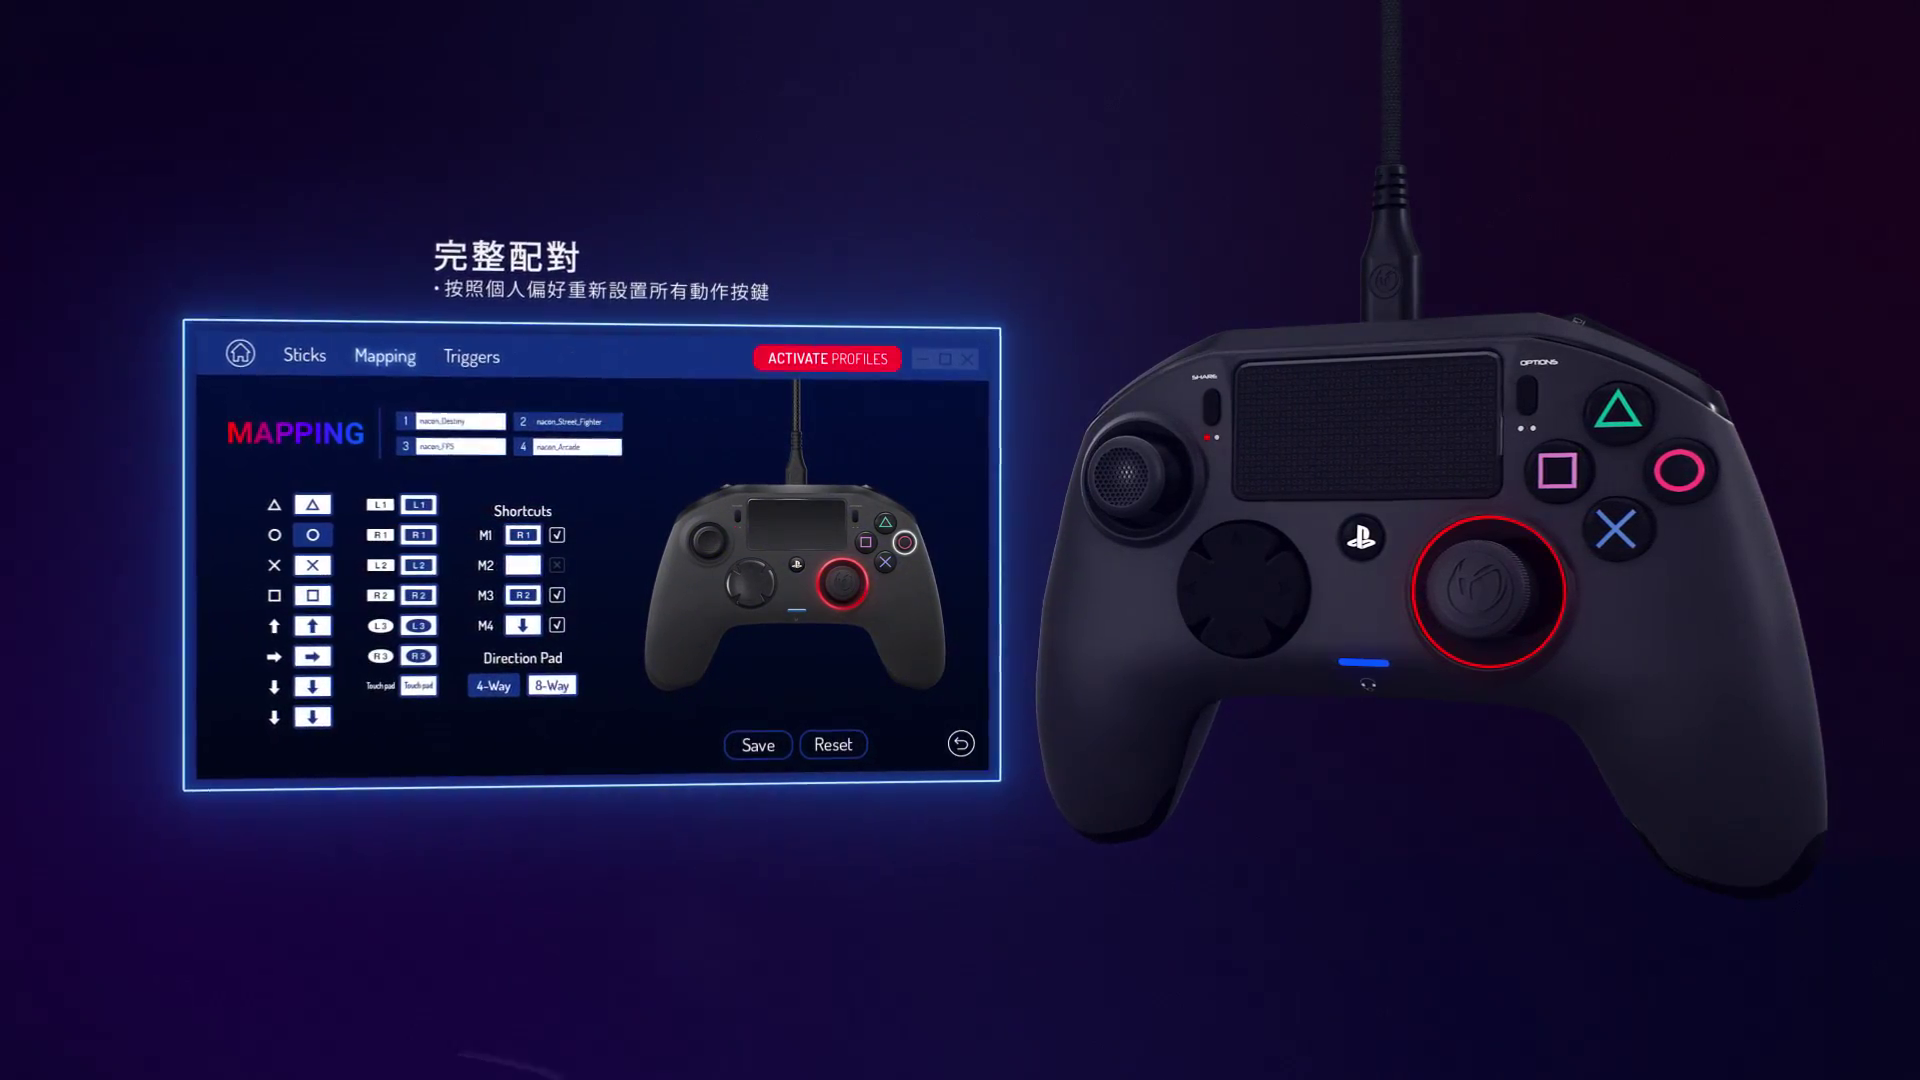 一般人也可掌握的電競控制器revolution Pro Controller 2 今月底於香港推出 潮流集合 popular